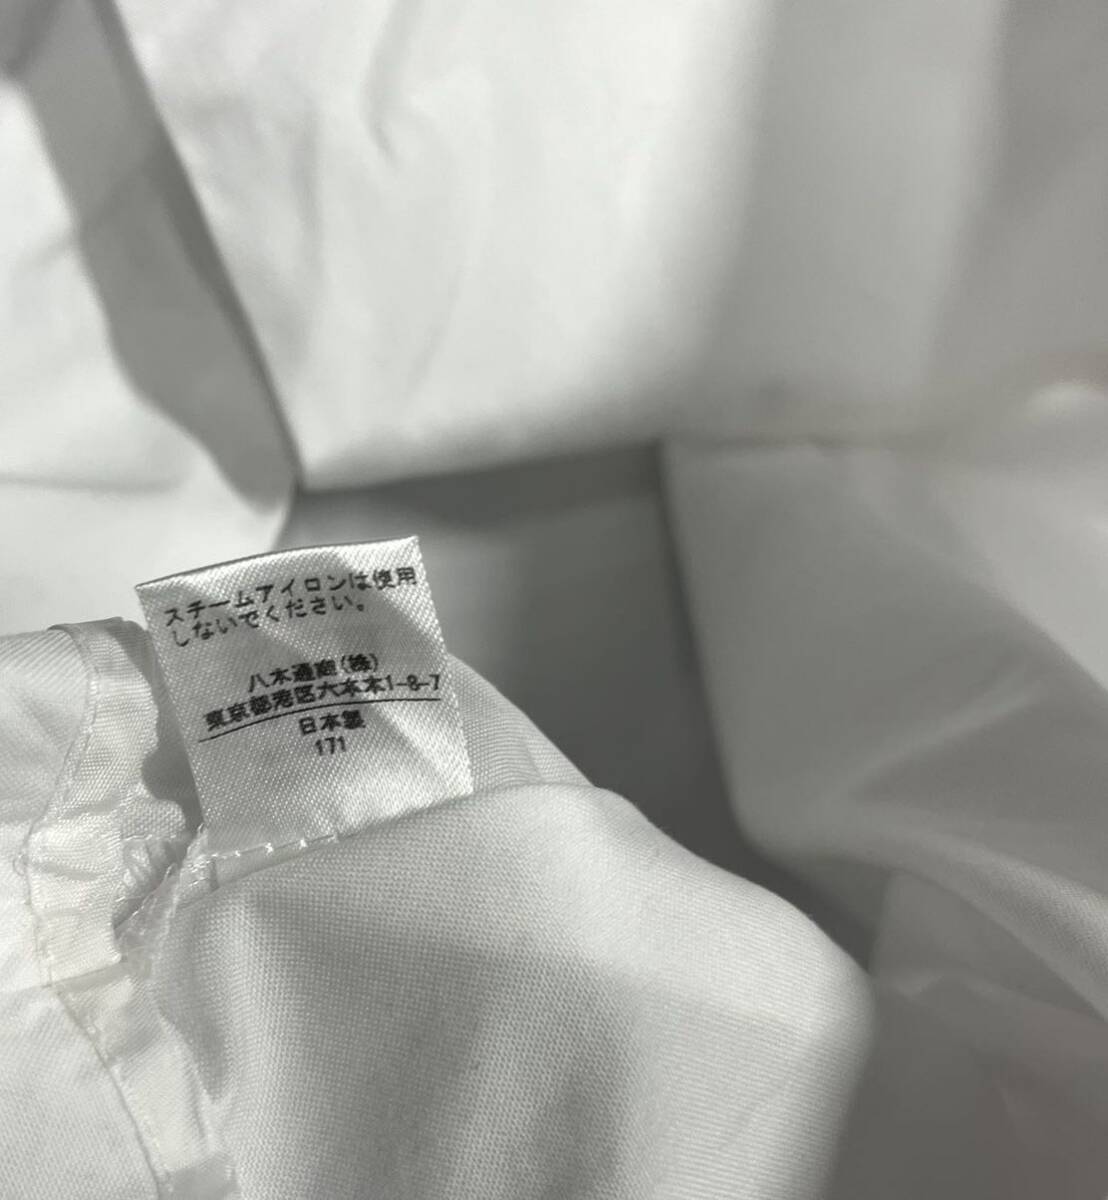 J&M Davidson* J and M Davidson * сделано в Японии 8447-20059(10) широкий рукав боковой разрез тянуть over блуза tops / белой серии 